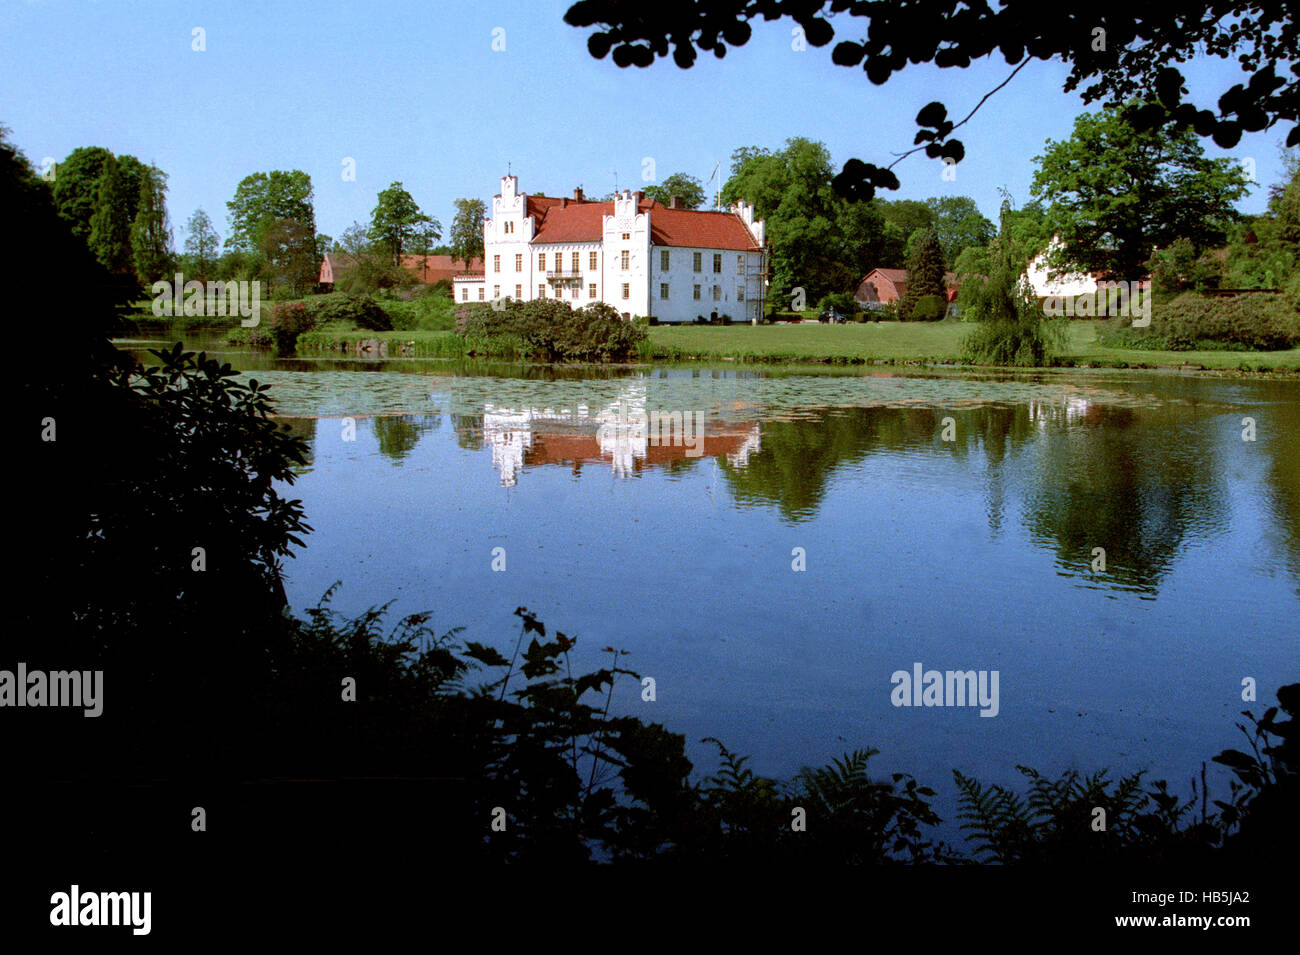 VANAS castello presso il lago con la sua esposizione di arte nel parco circostante Foto Stock